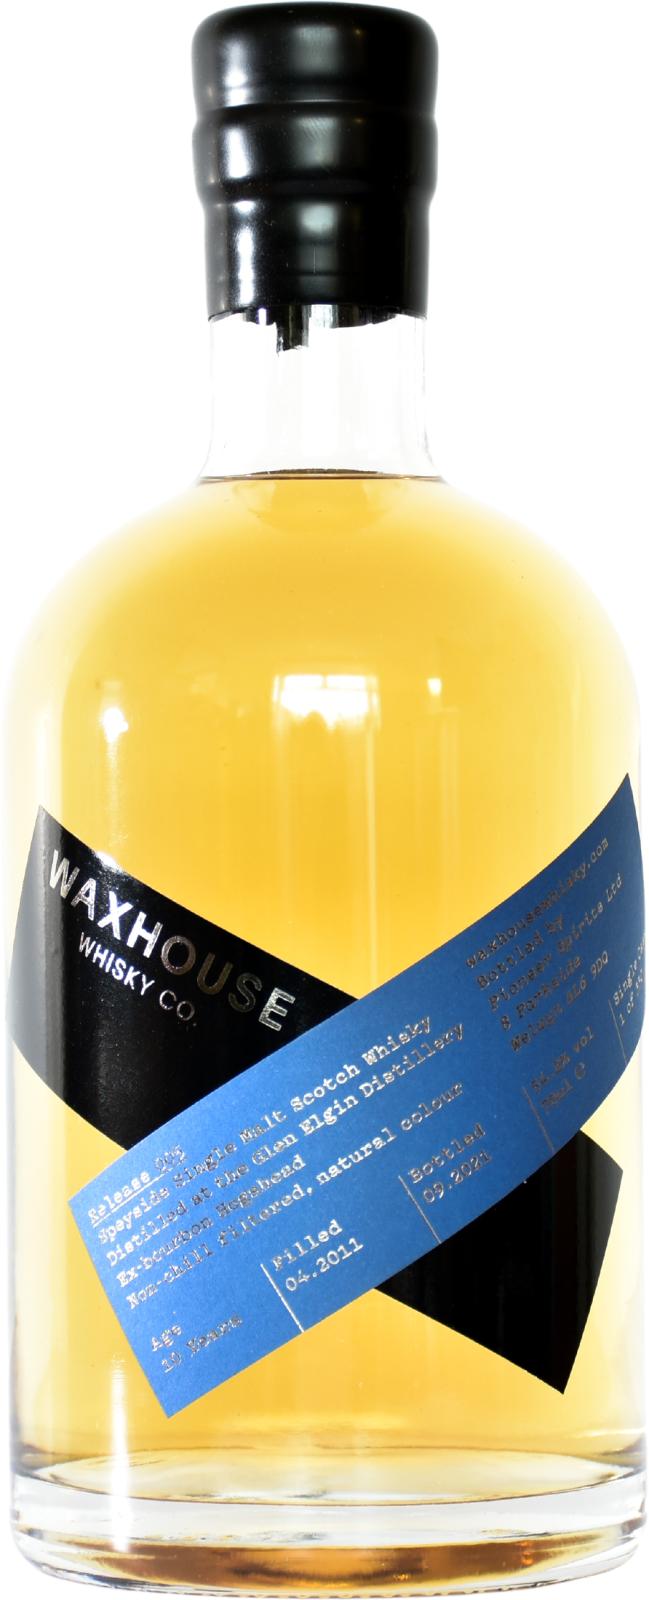 Glen Elgin 2011 TWWC Release 005 10 Year Old 2021 Release Single Malt Scotch Whisky | 700ML